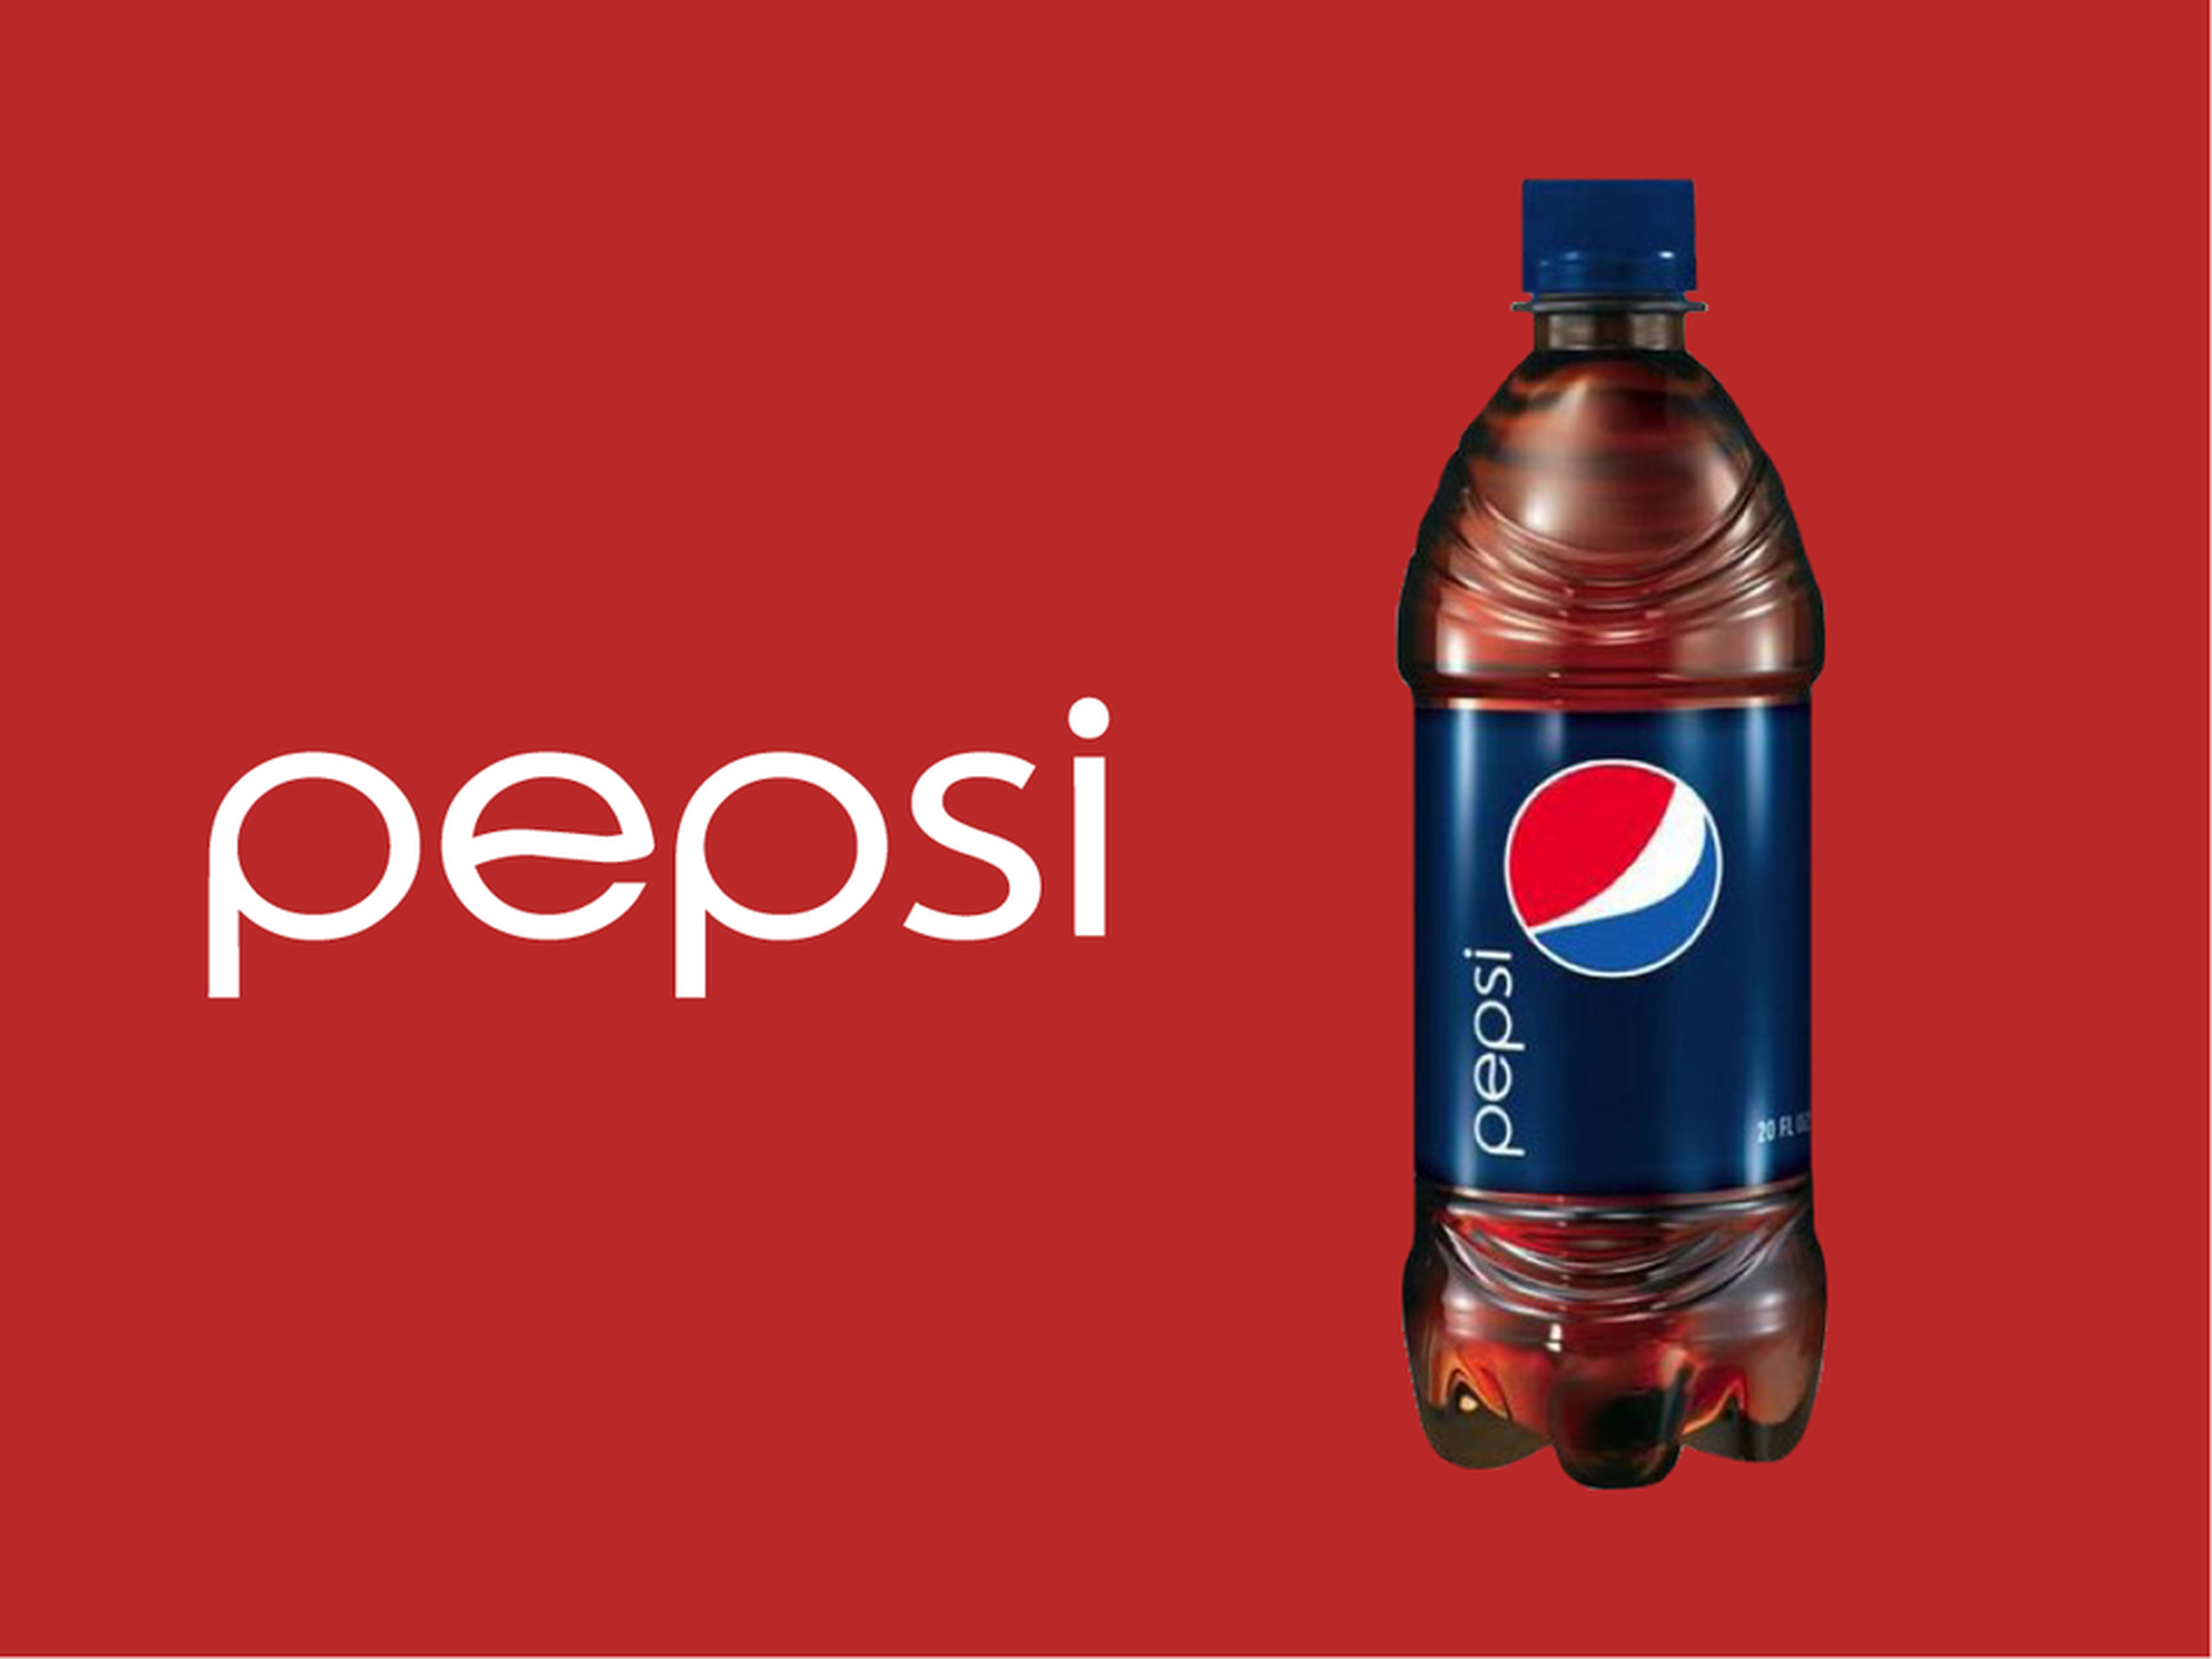 Logo de Pepsi junto a botella